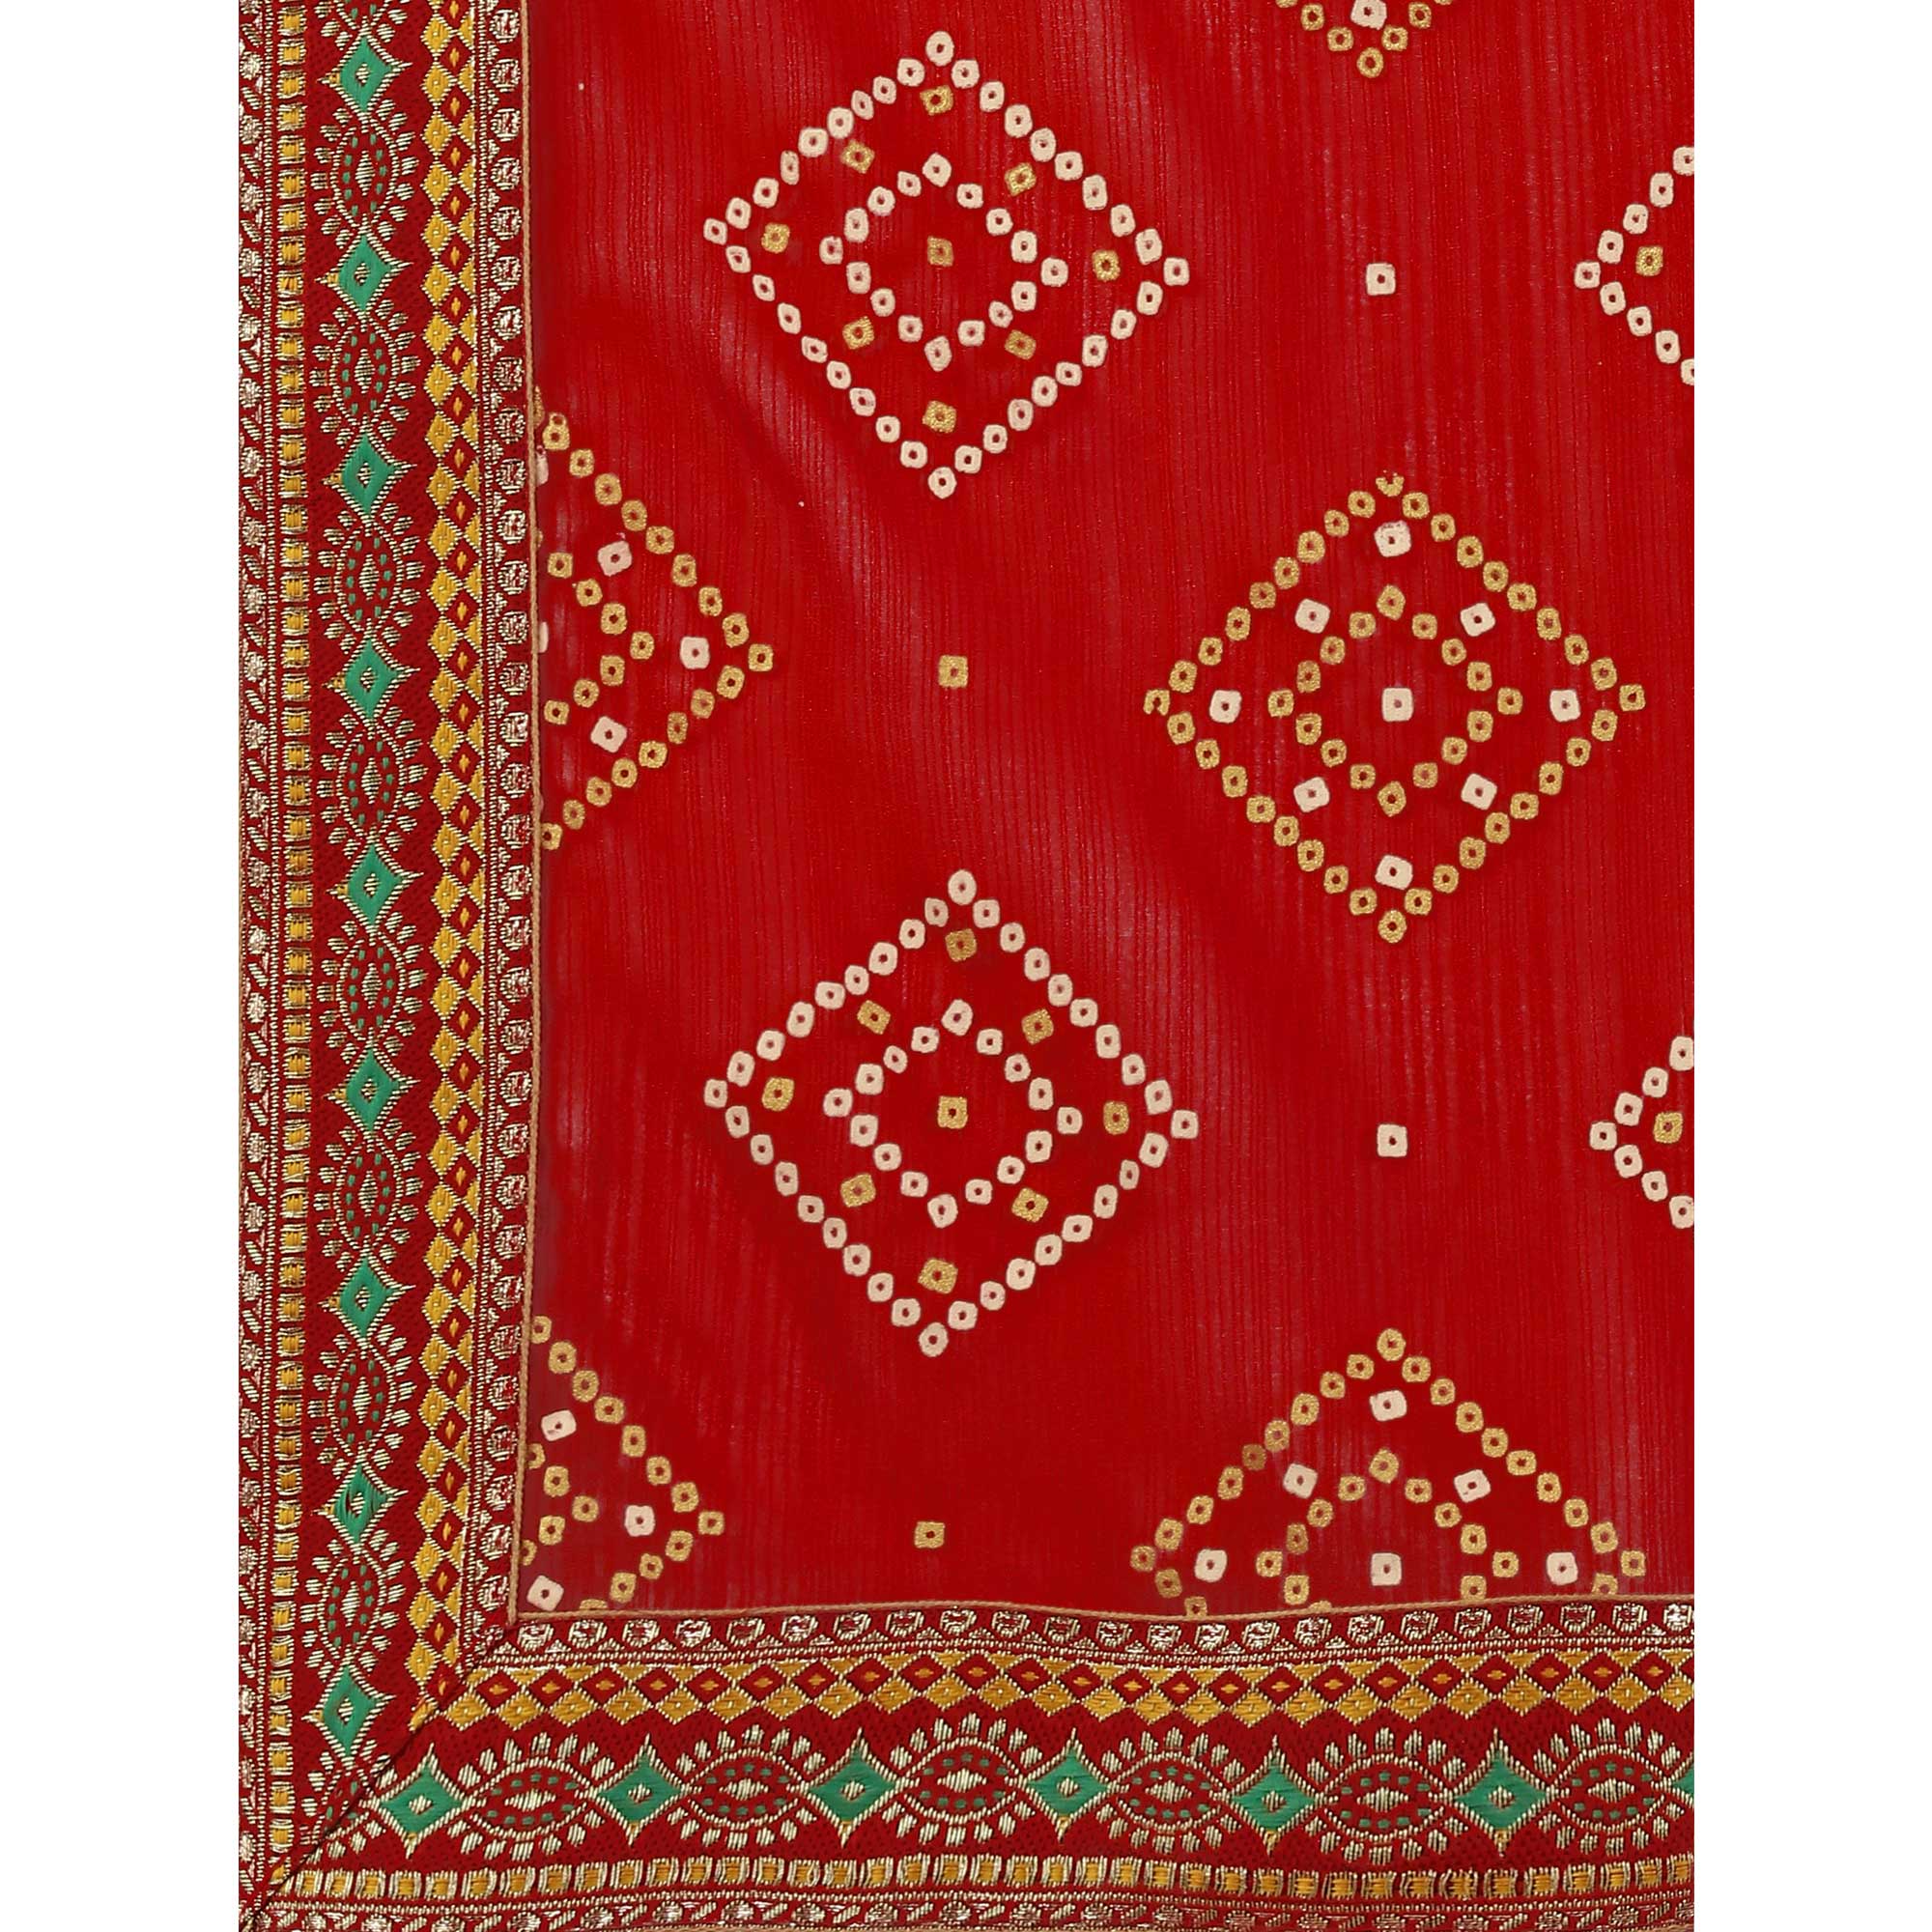 Red Bandhani Printed Chiffon Saree